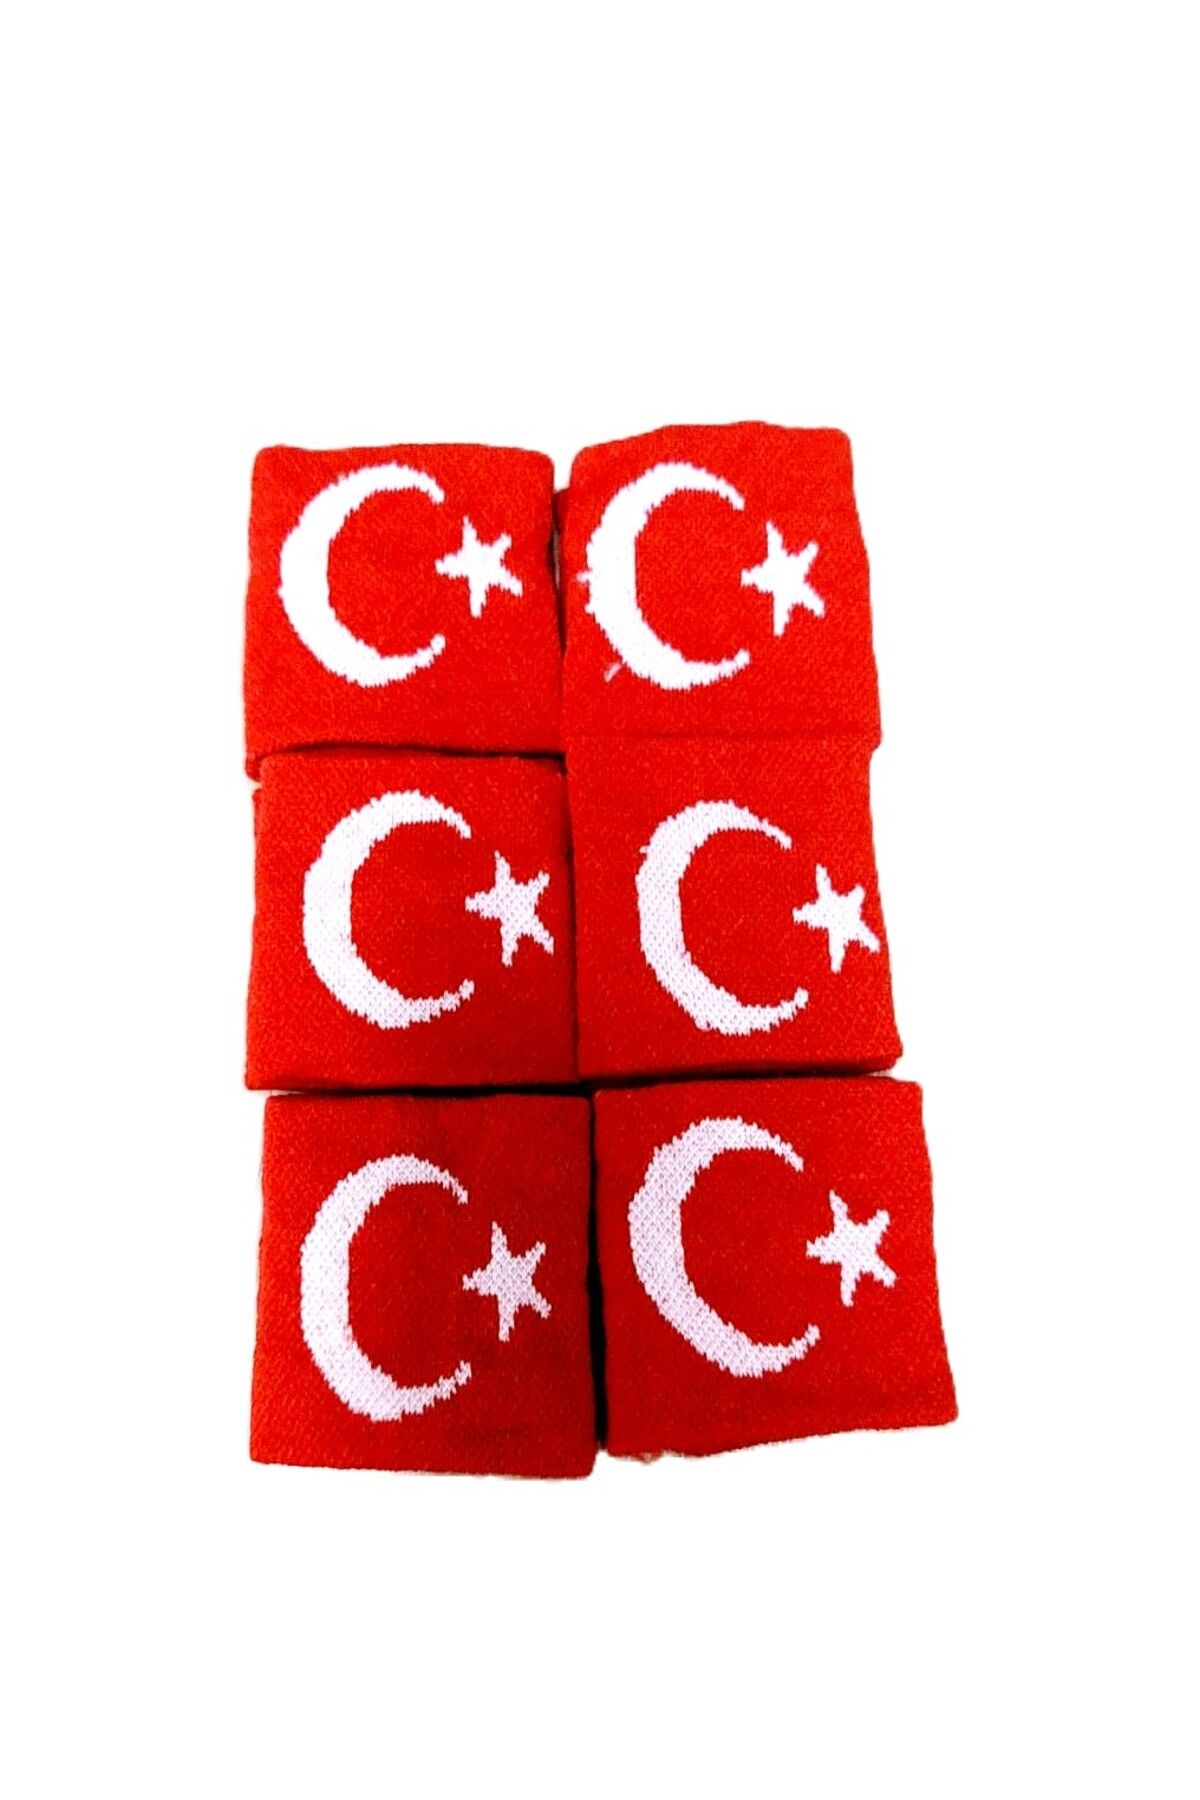 şahane parti Türk Bayraklı Havlu Bileklik 12 Adet